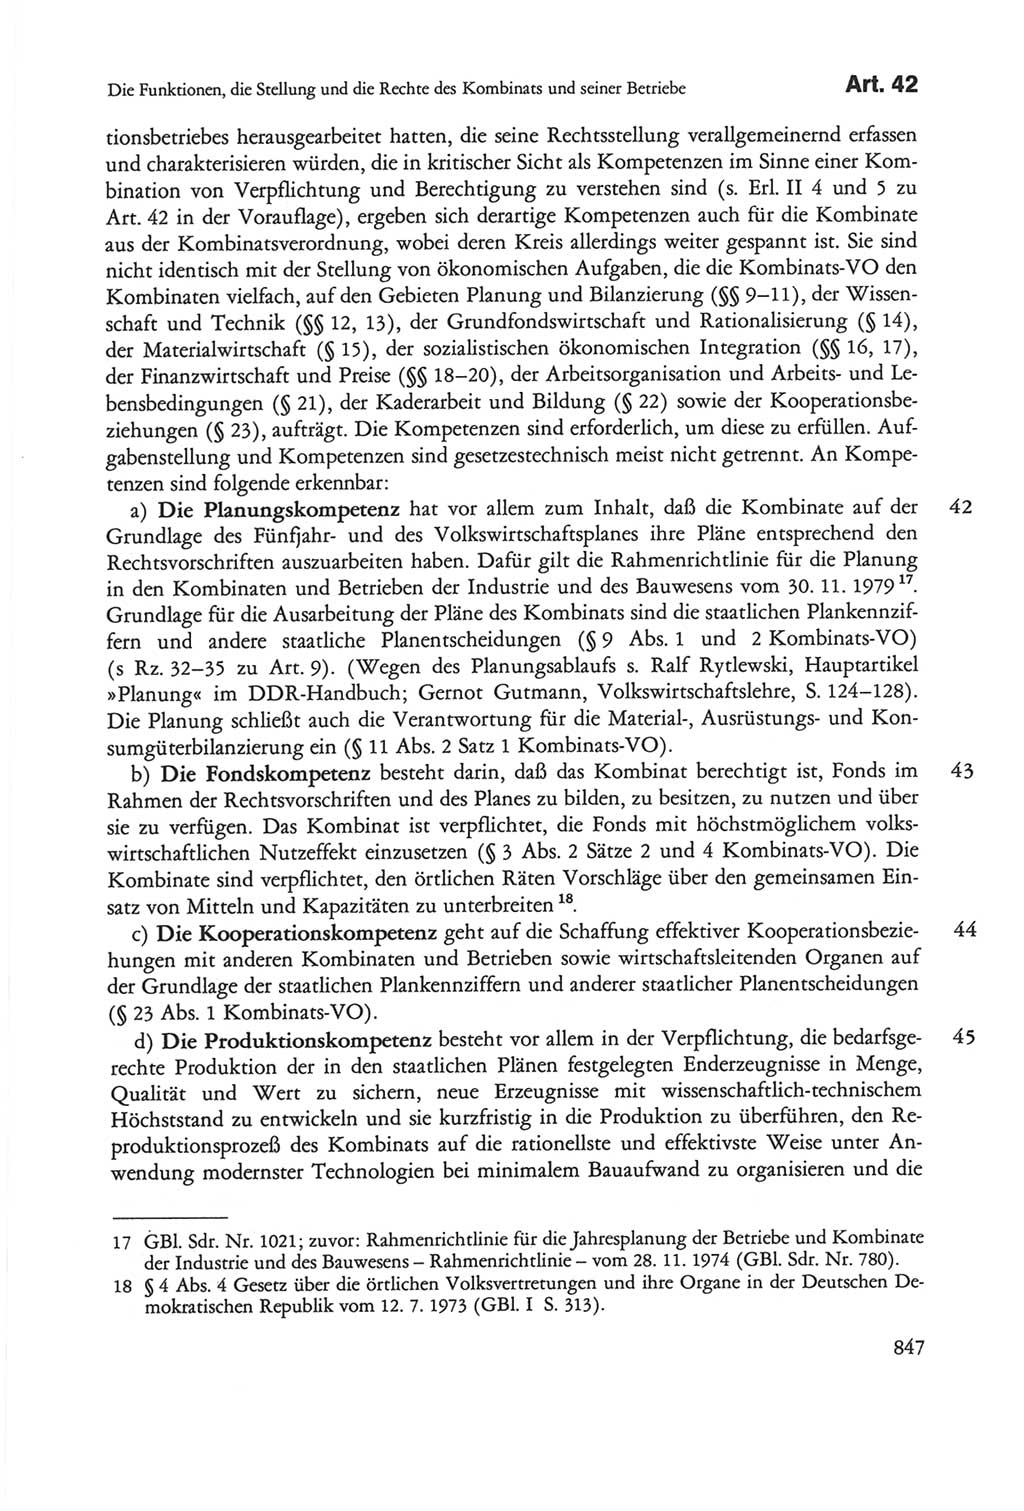 Die sozialistische Verfassung der Deutschen Demokratischen Republik (DDR), Kommentar mit einem Nachtrag 1997, Seite 847 (Soz. Verf. DDR Komm. Nachtr. 1997, S. 847)